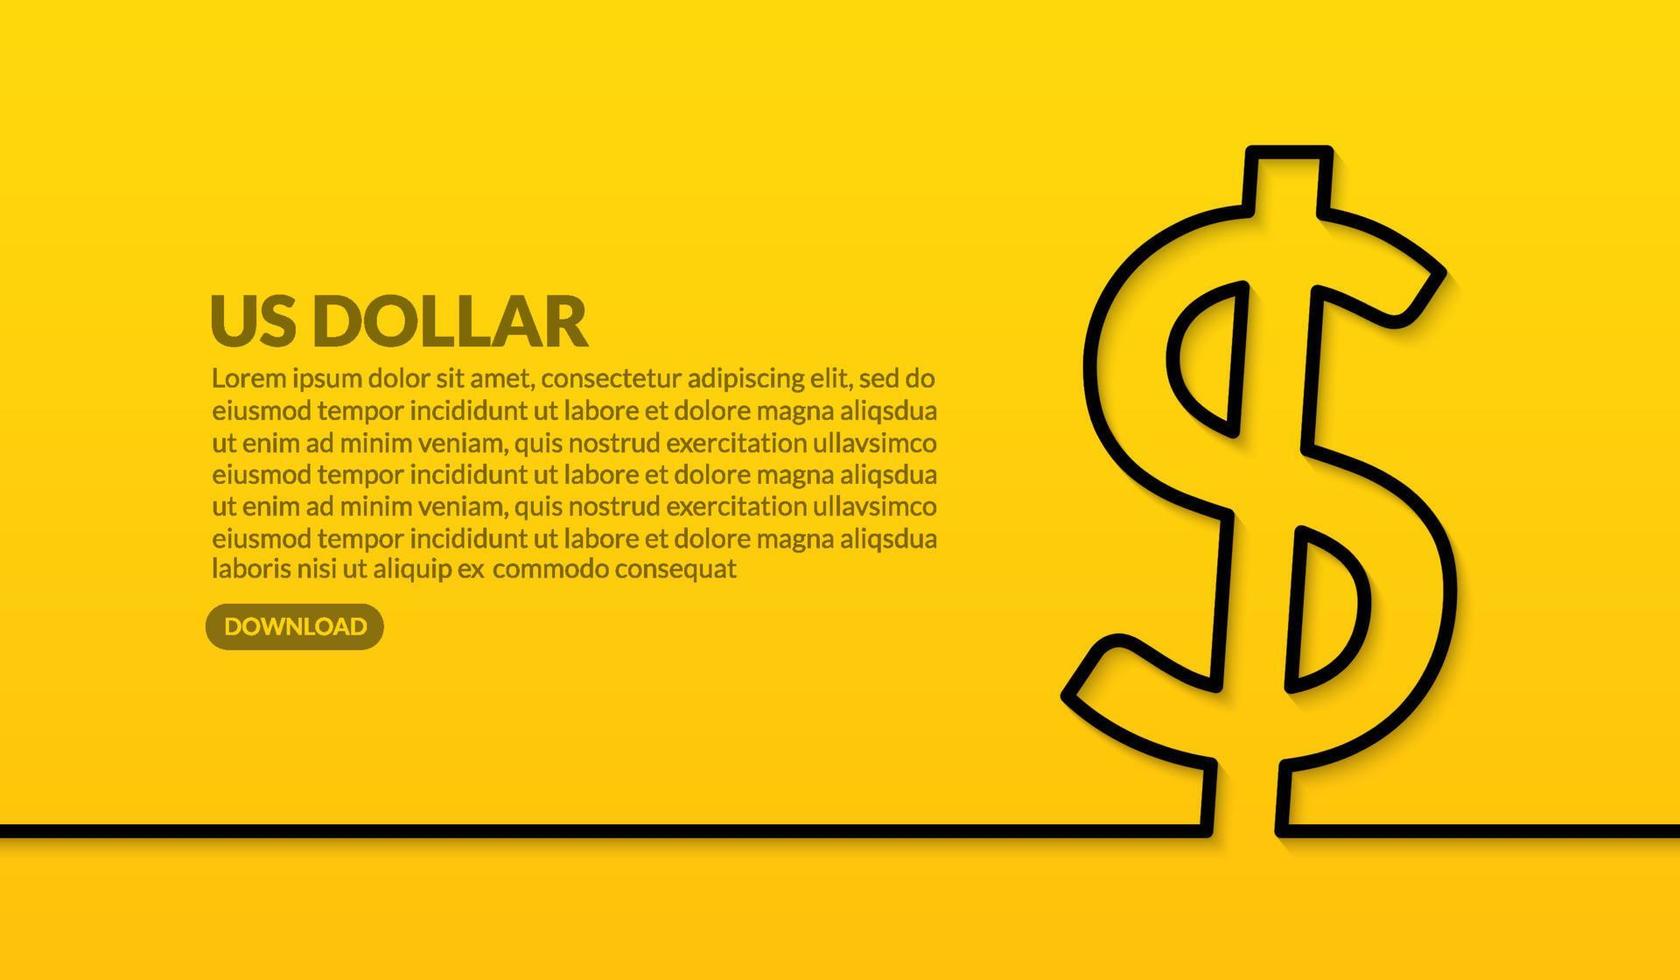 Amerikaanse dollar valuta minimaal lijnontwerp op gele achtergrond, online betaling en uitwisselingsconcept vector